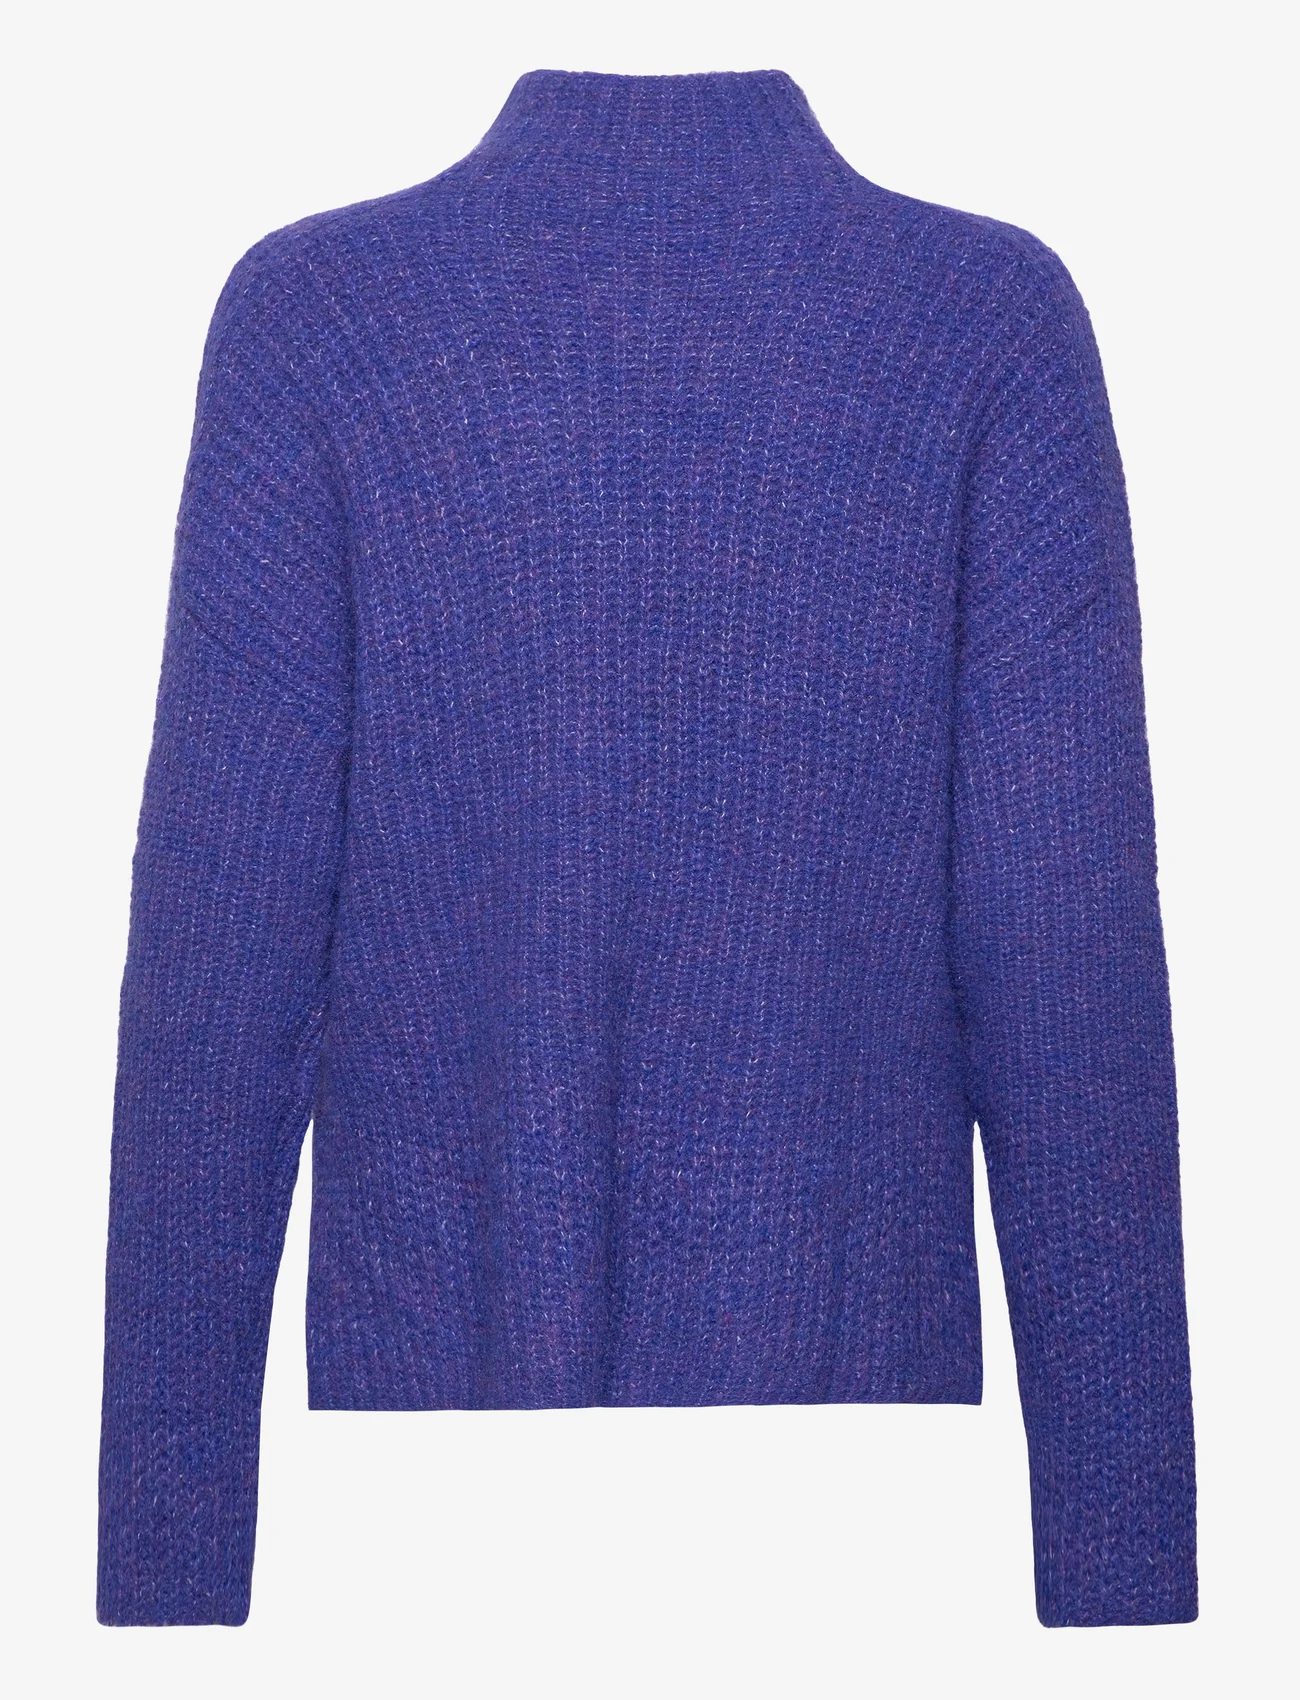 Tom Tailor - knit pullover mock-neck - tröjor - crest blue melange - 1